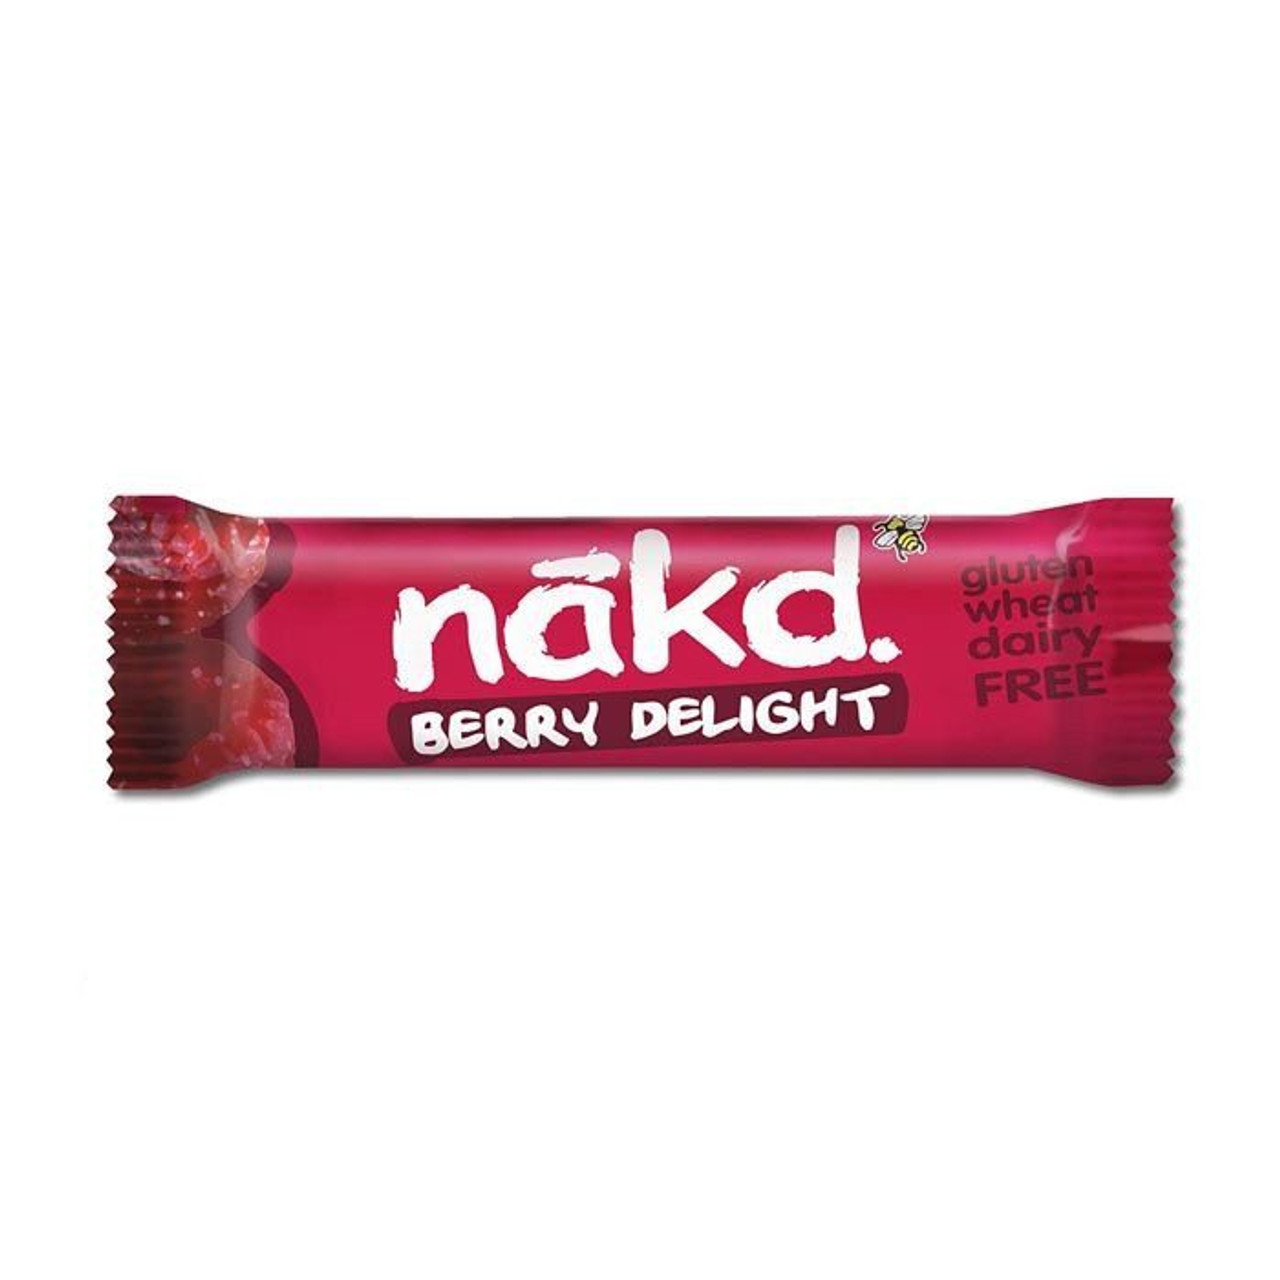 Nakd Cocoa Delight Bars 4 Pack - 4 x 35 g